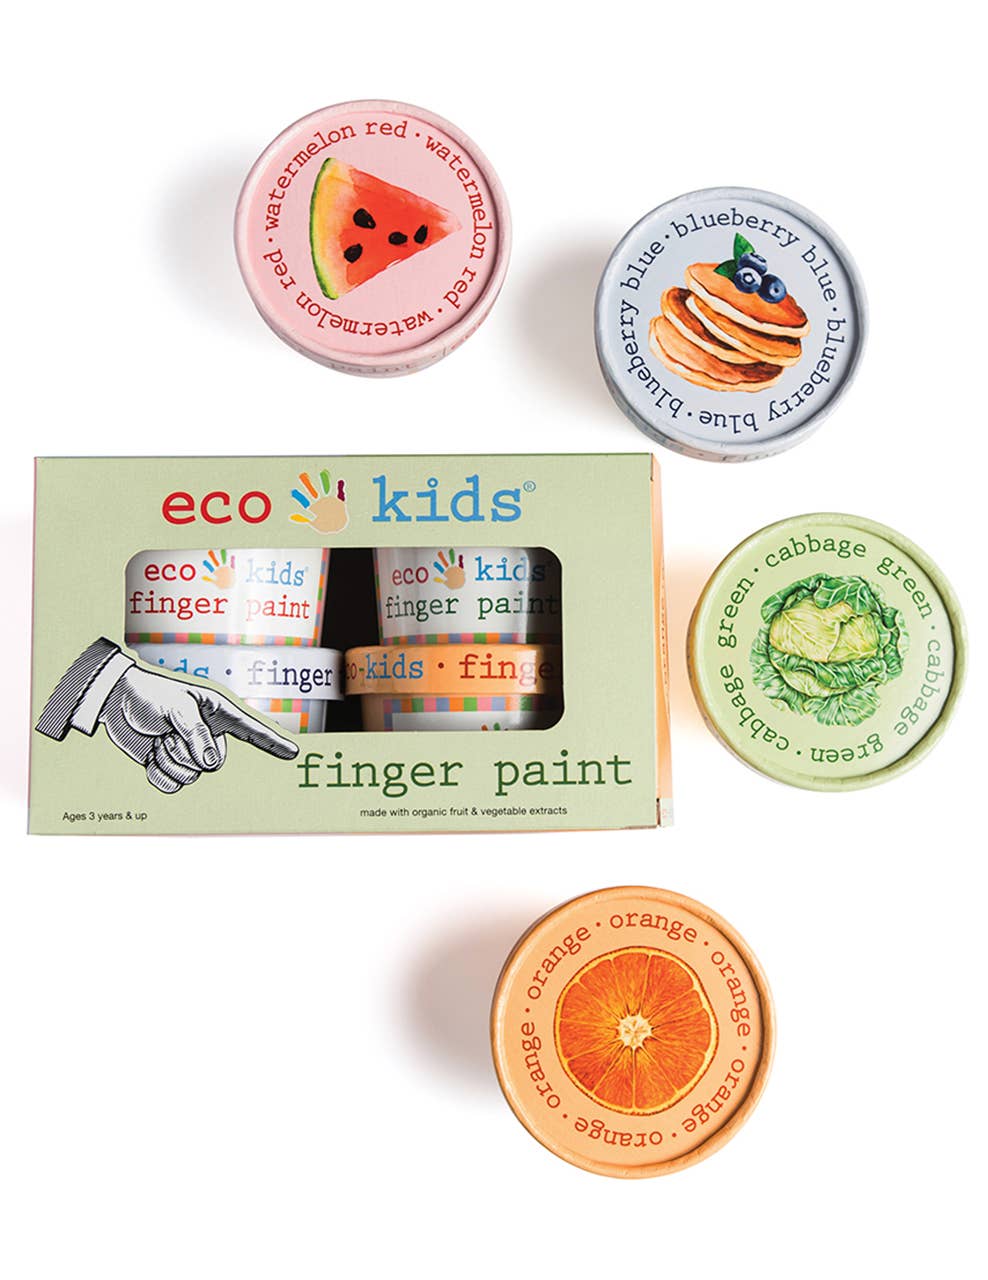 eco-kids - finger paint - case